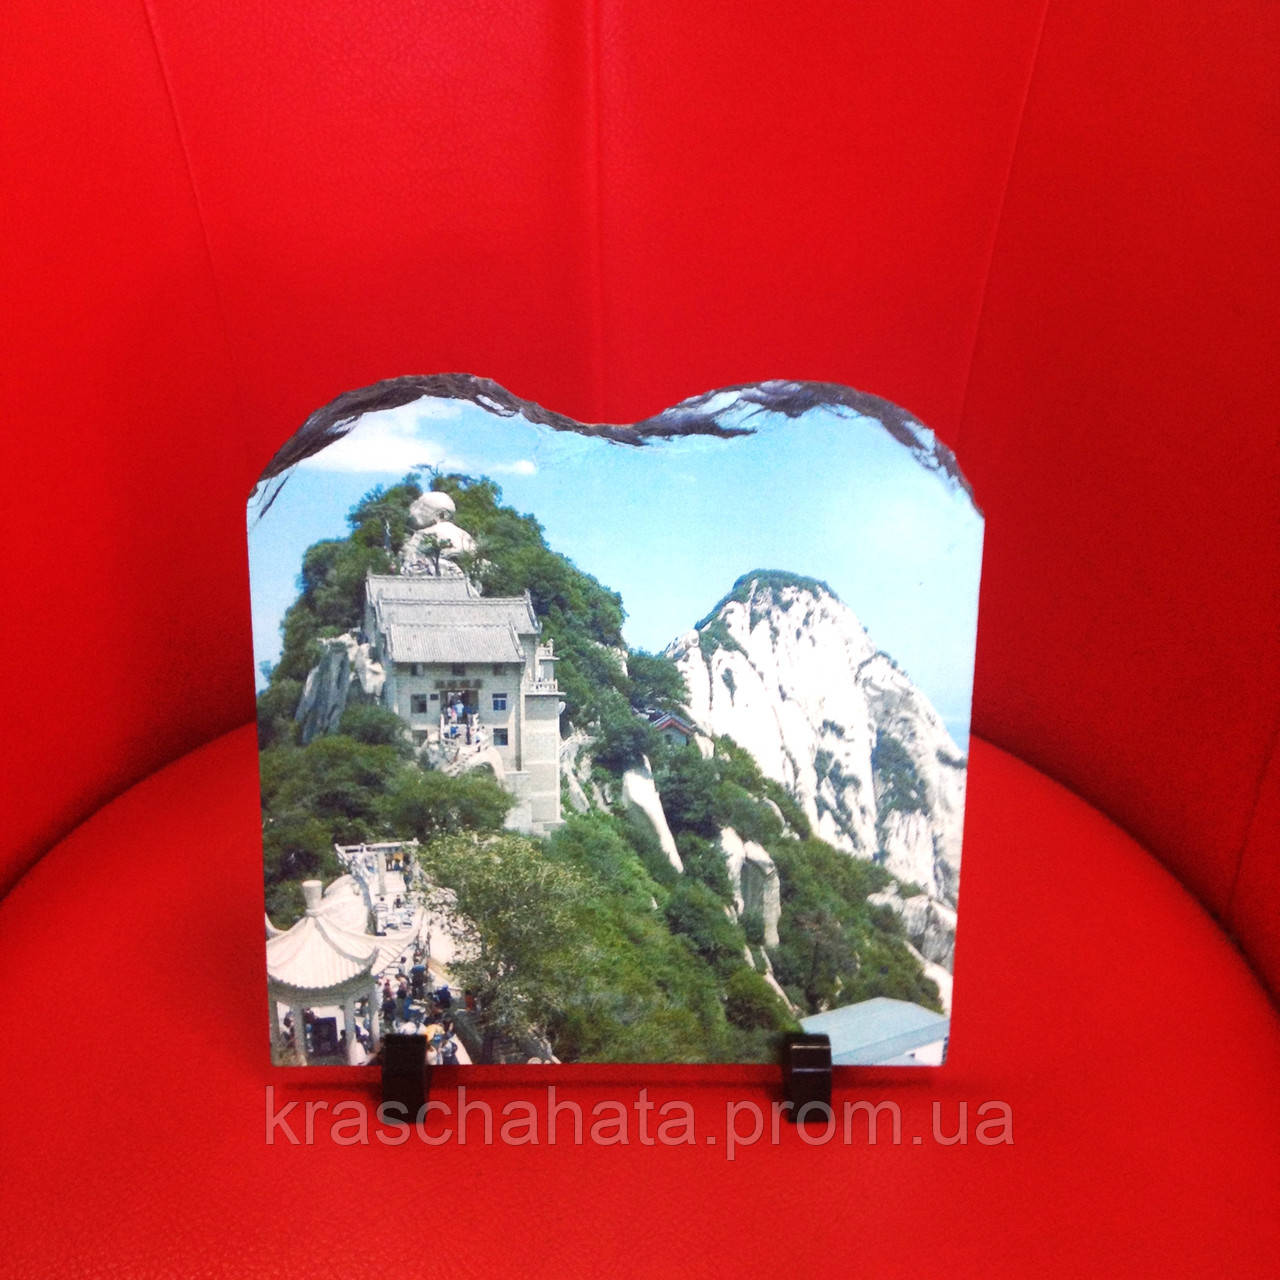 Картинка на камені, Таїланд, Подарунки для туристів, Дніпропетровськ